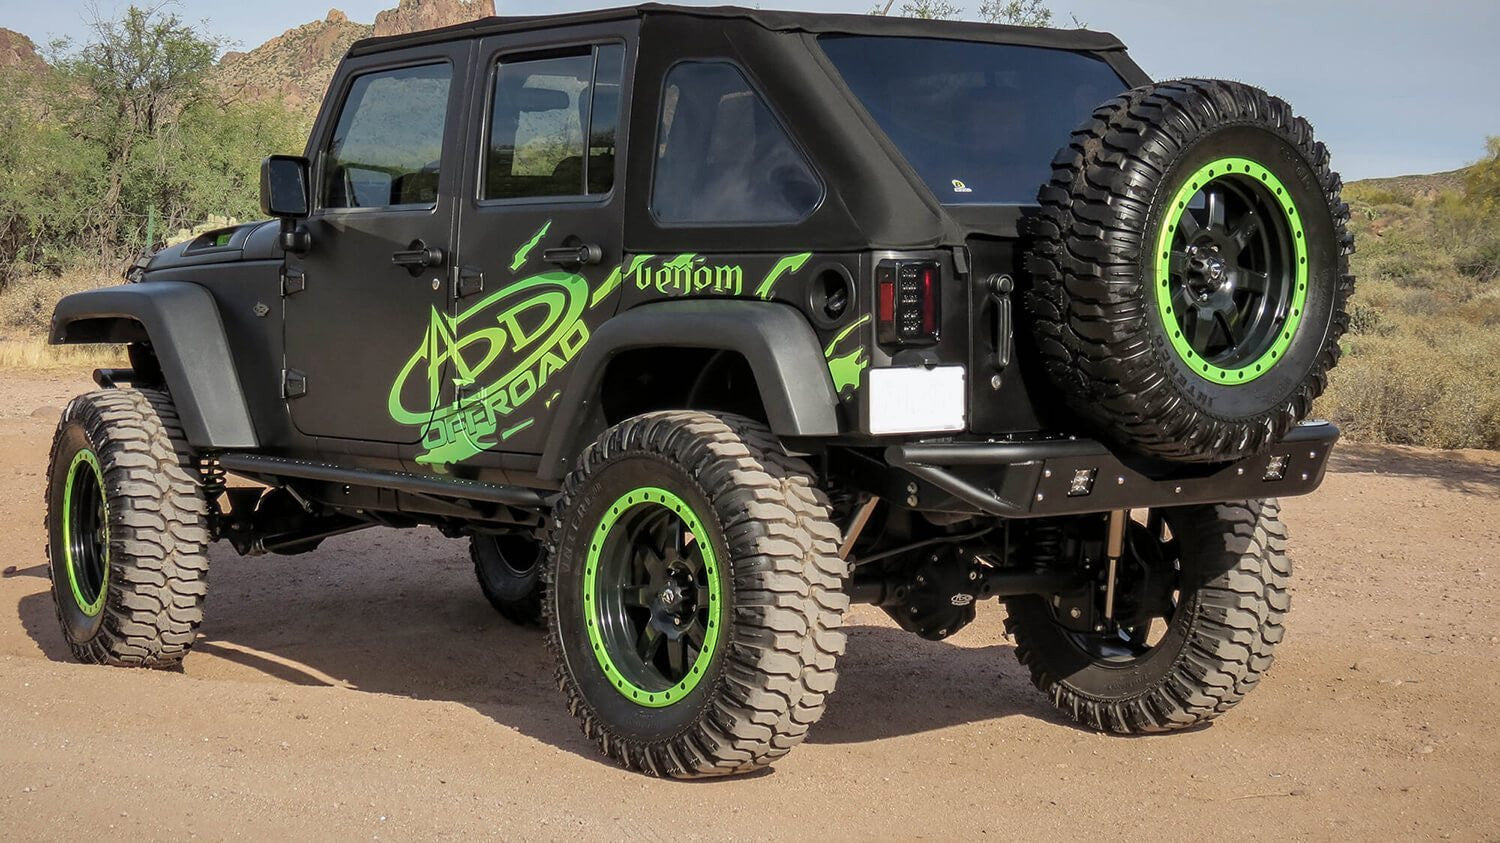 Venom Rear Bumper Addictive Desert DesignsR952251370103 - Bumpers - Addictive Desert Designs - Texas Complete Truck Center